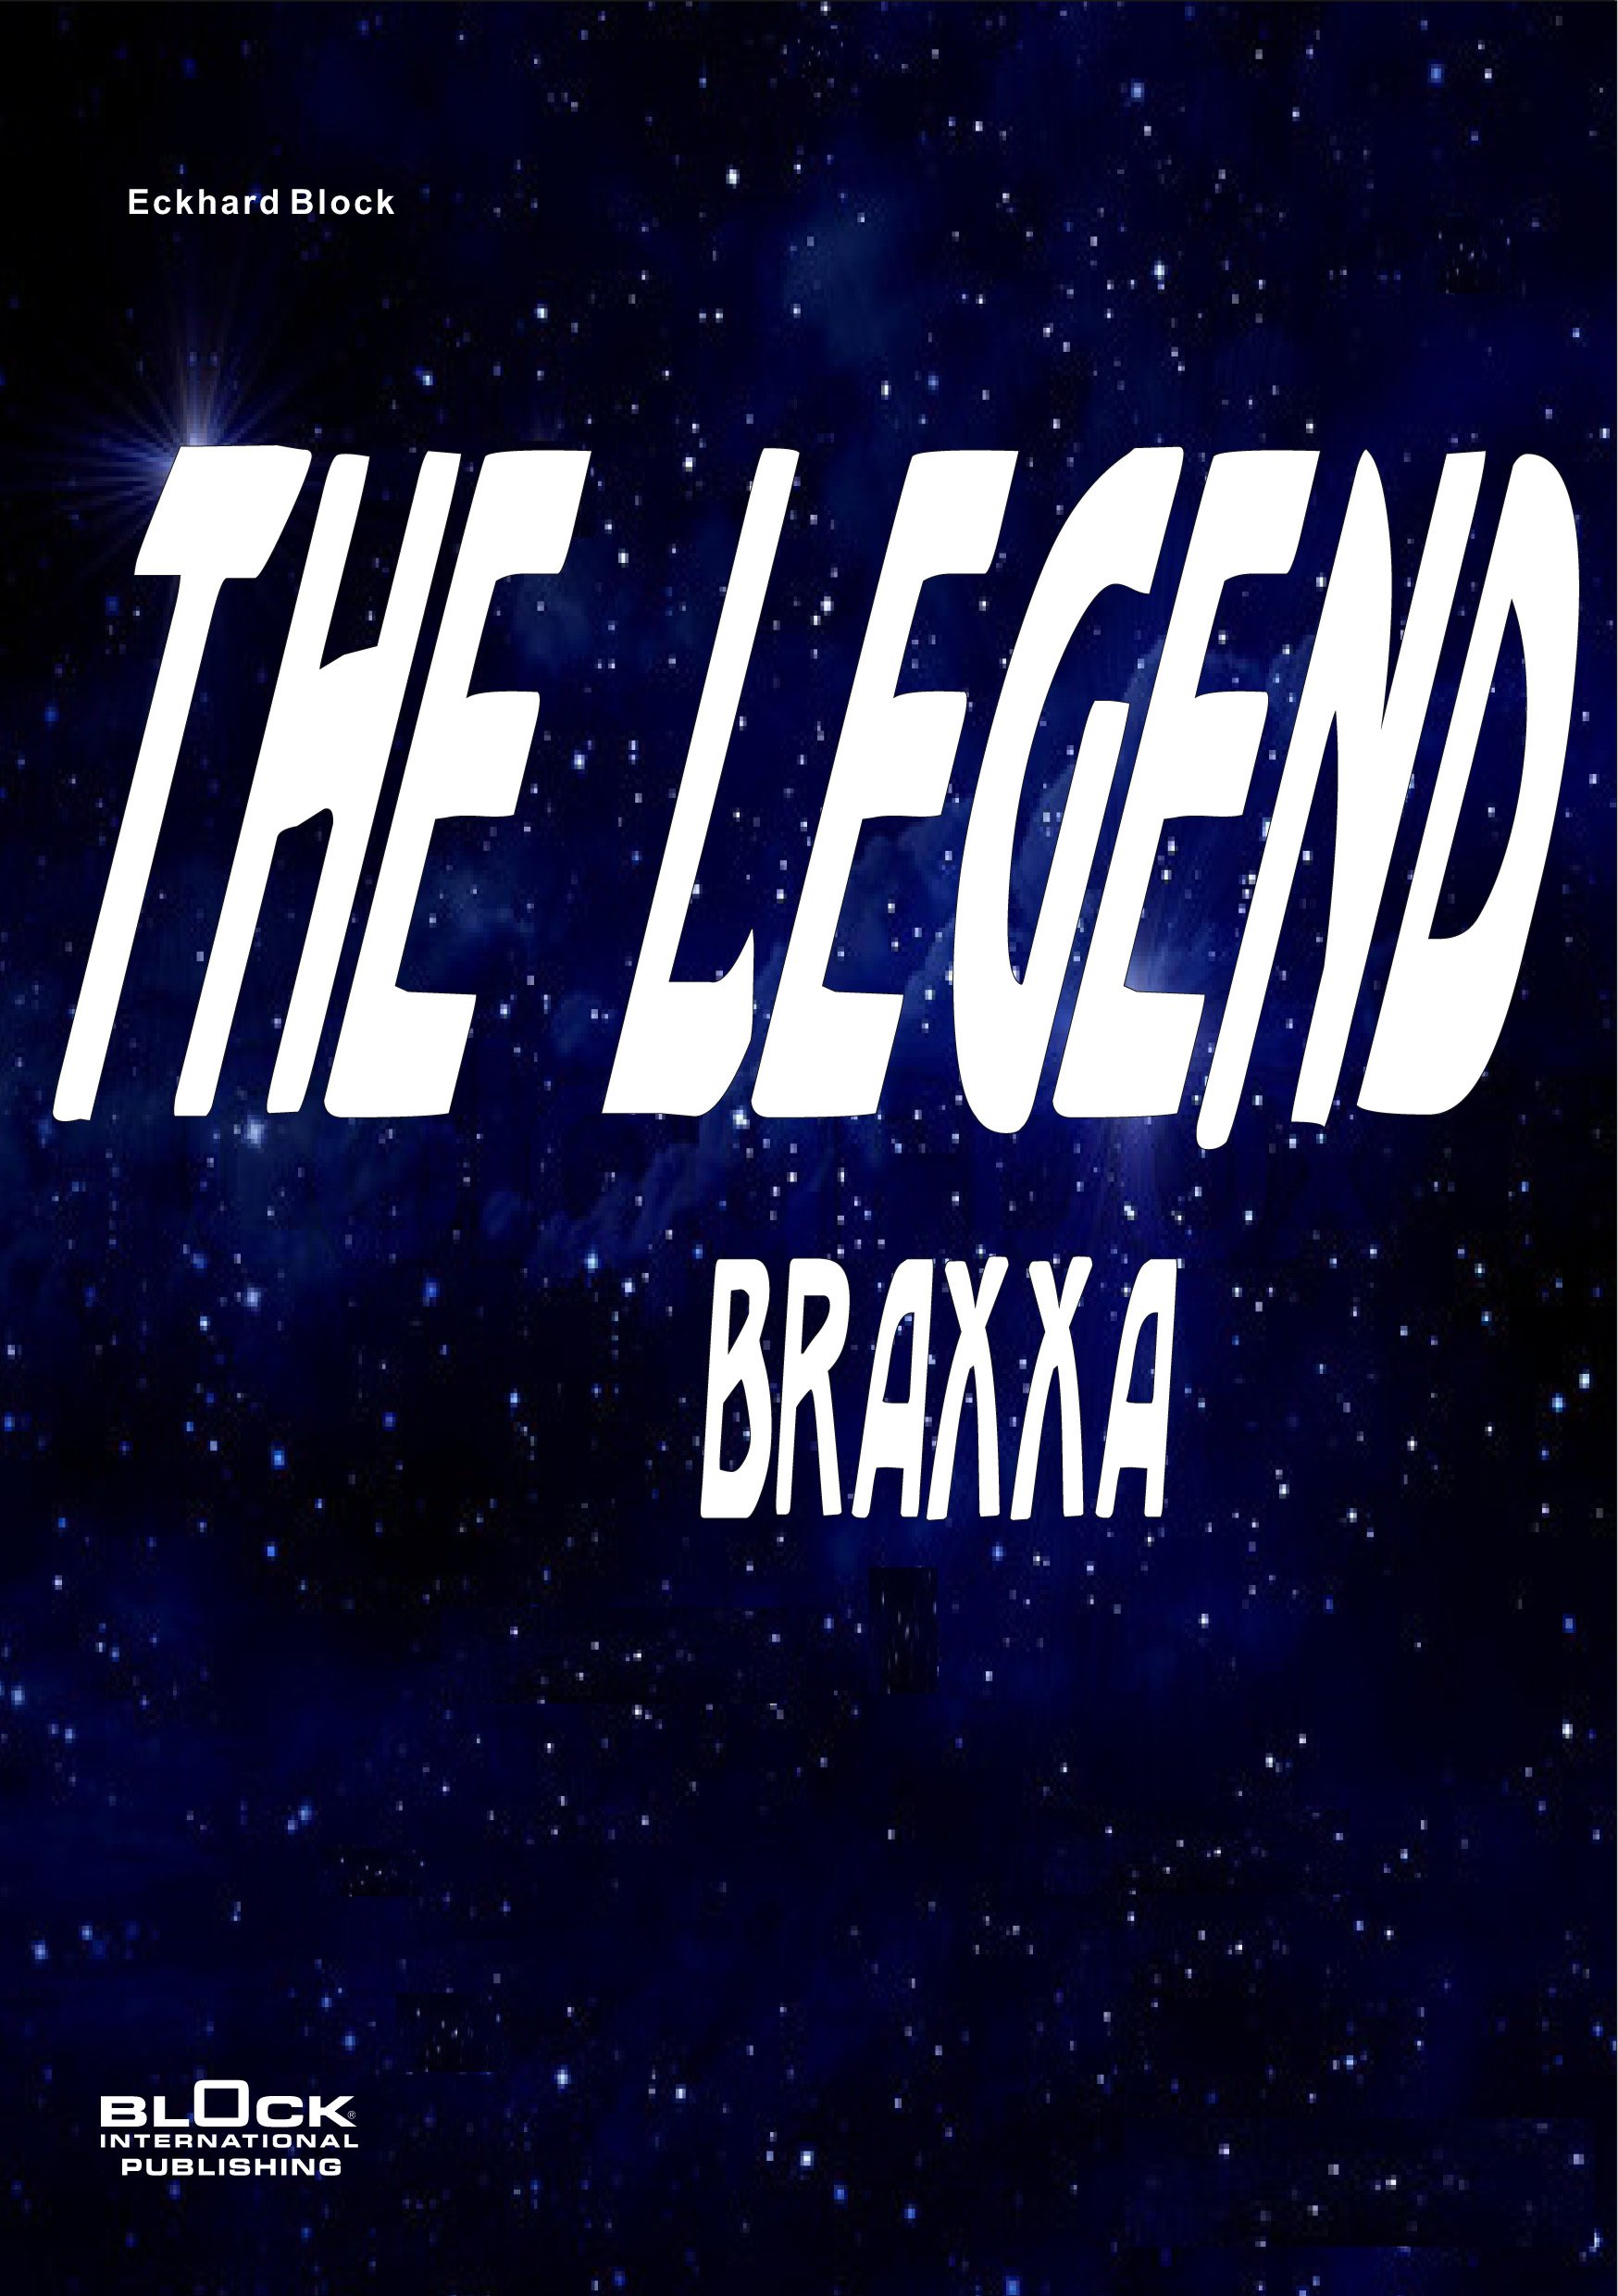 Legend Braxxa